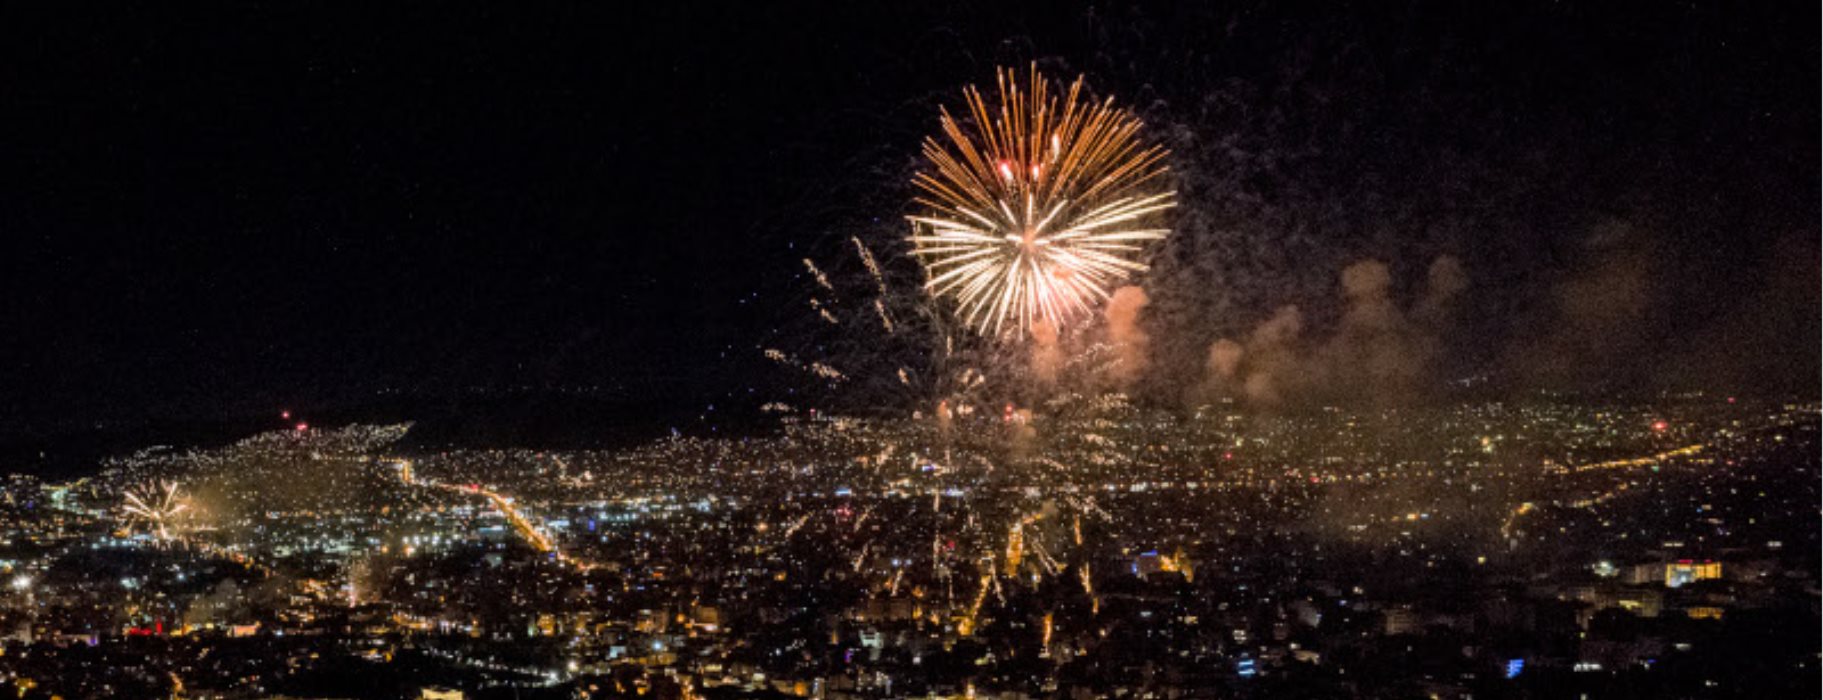 Πρωτοχρονιά: Έγινε η νύχτα μέρα από τα πυροτεχνήματα Πώς υποδέχθηκε το 2021 η Ελλάδα [Εικόνες - Βίντεο]